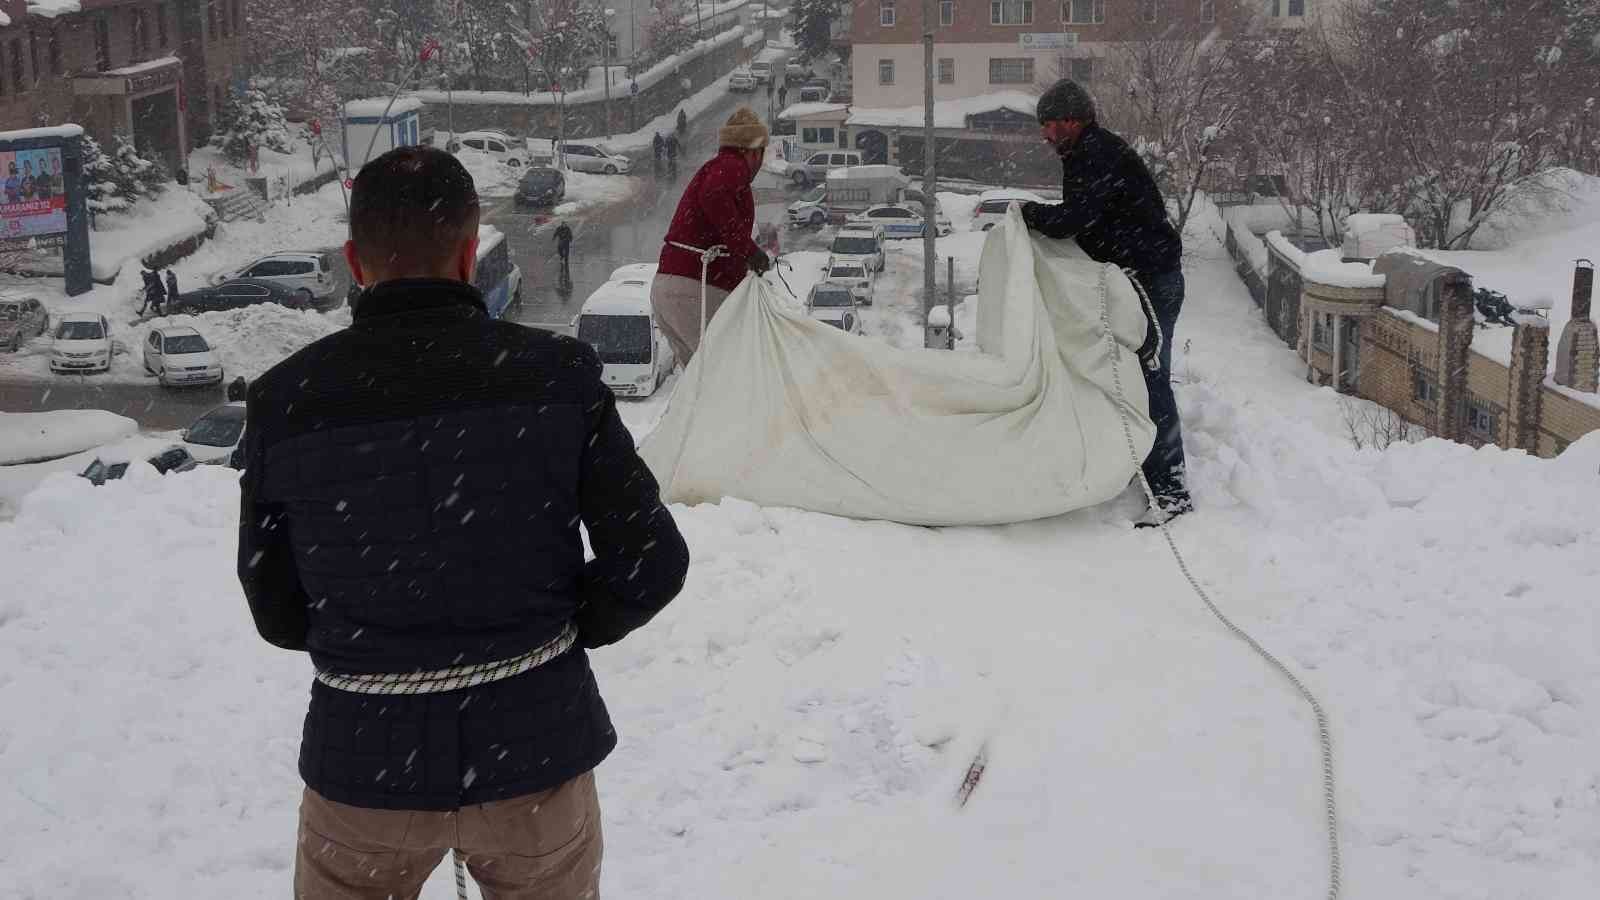 Muş’ta işçilerin çatılarda tehlikeli kar temizliği başladı #mus